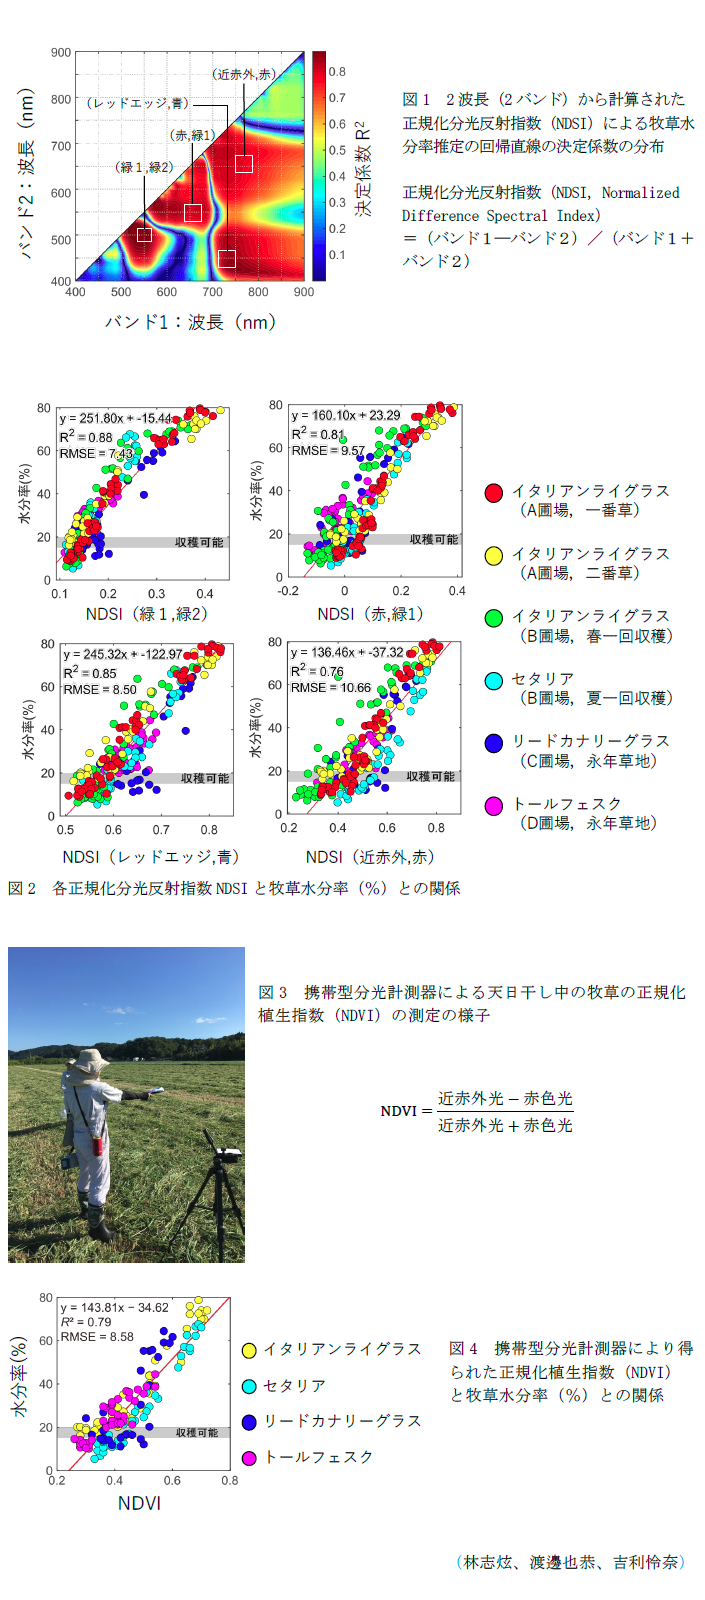 図1 2波長(2バンド)から計算された正規化分光反射指数(NDSI)による牧草水分率推定の回帰直線の決定係数の分布,図2 各正規化分光反射指数NDSIと牧草水分率(%)との関係,図3 携帯型分光計測器による天日干し中の牧草の正規化植生指数(NDVI)の測定の様子,図4 携帯型分光計測器により得られた正規化植生指数(NDVI)と牧草水分率(%)との関係